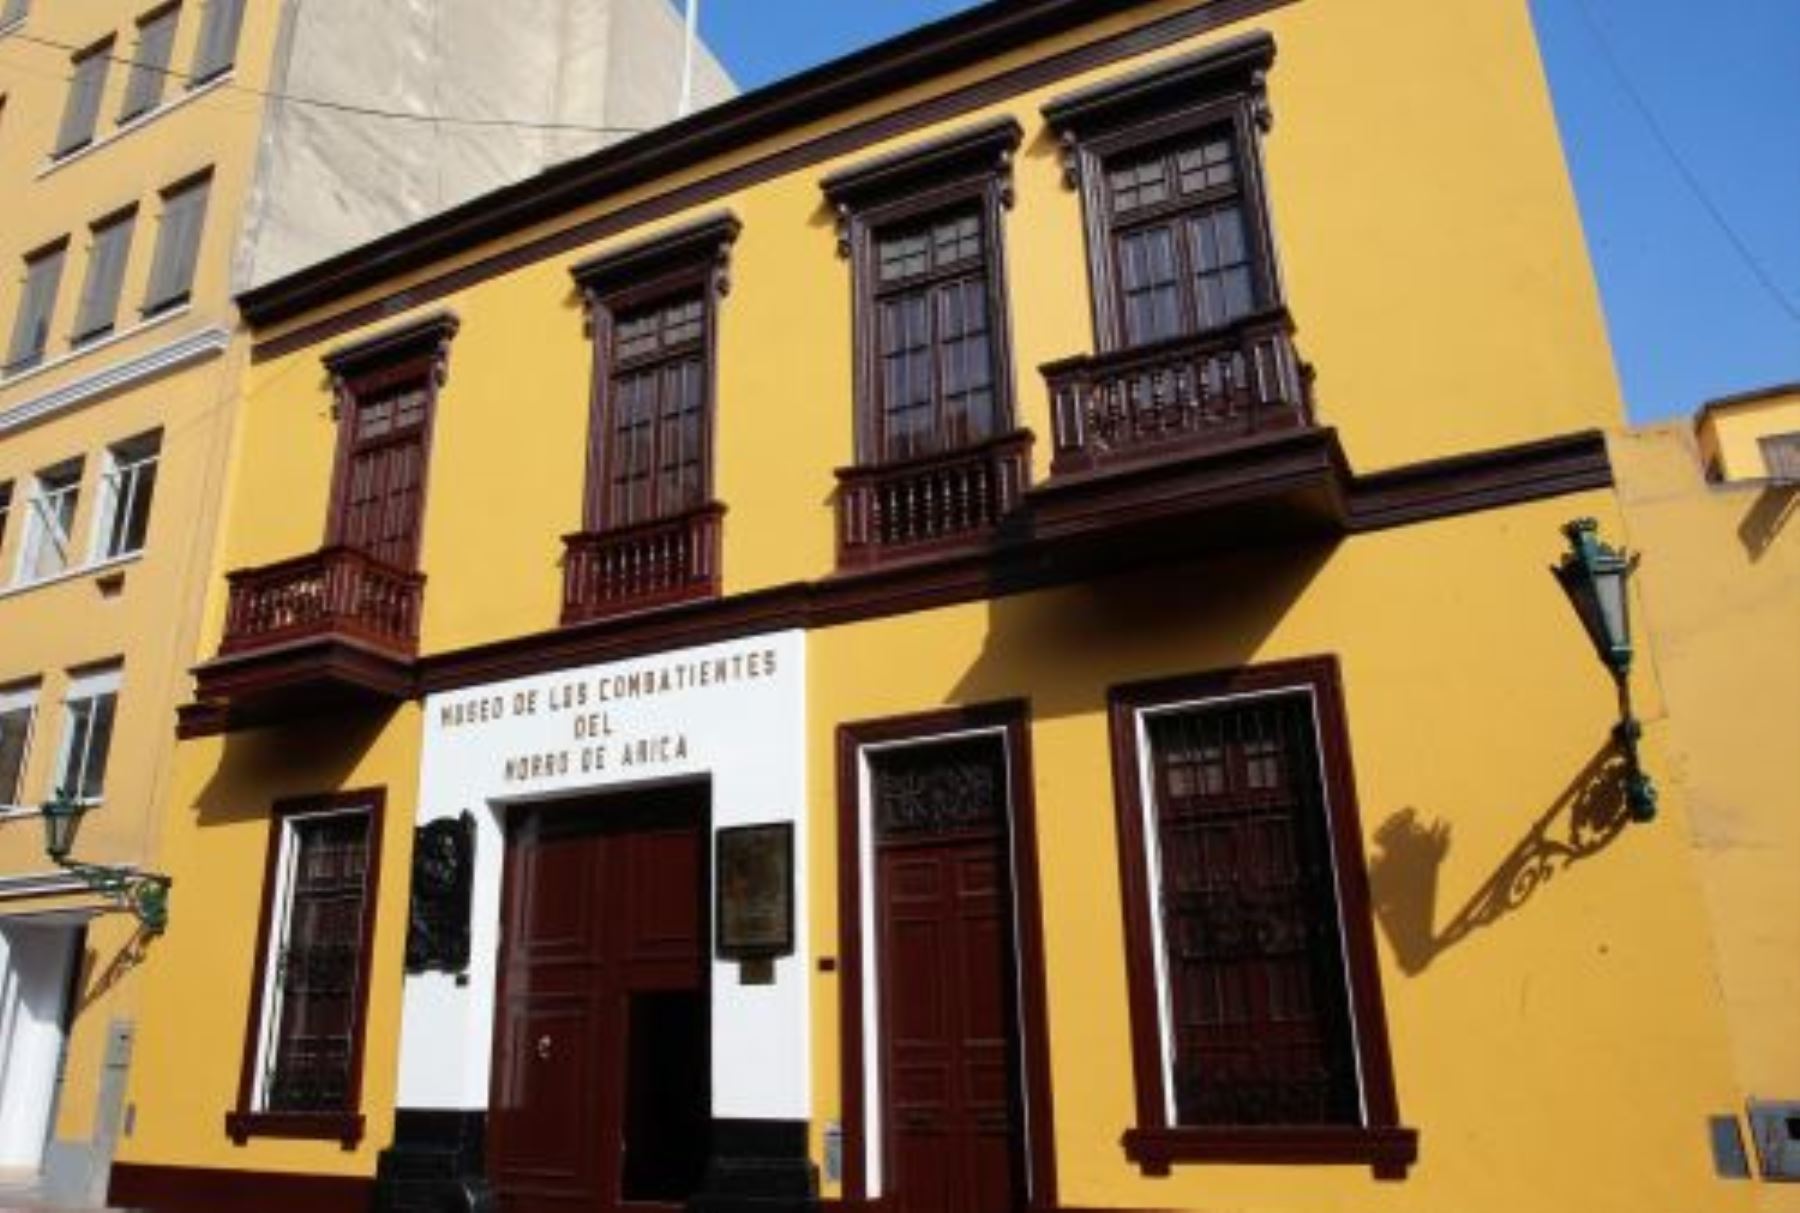 Casa de Francisco Bolognesi en pleno proceso de remodelación por el bicentenario de su nacimiento 1816- 2016.